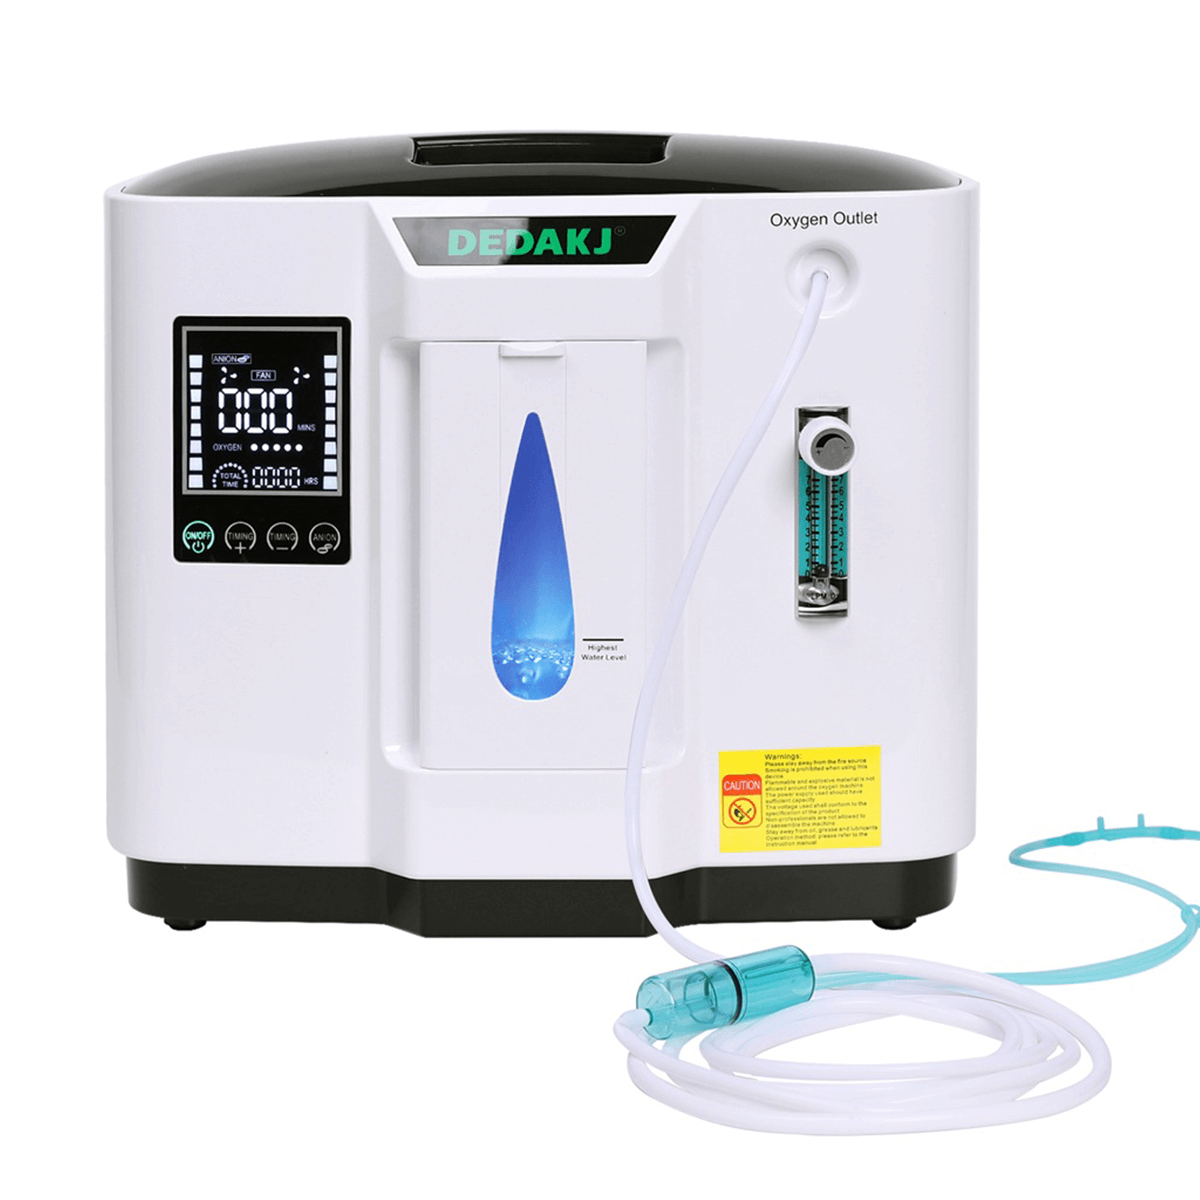 DEDAKJ 7liter continuous flow home oxygen concentrator DE-1A